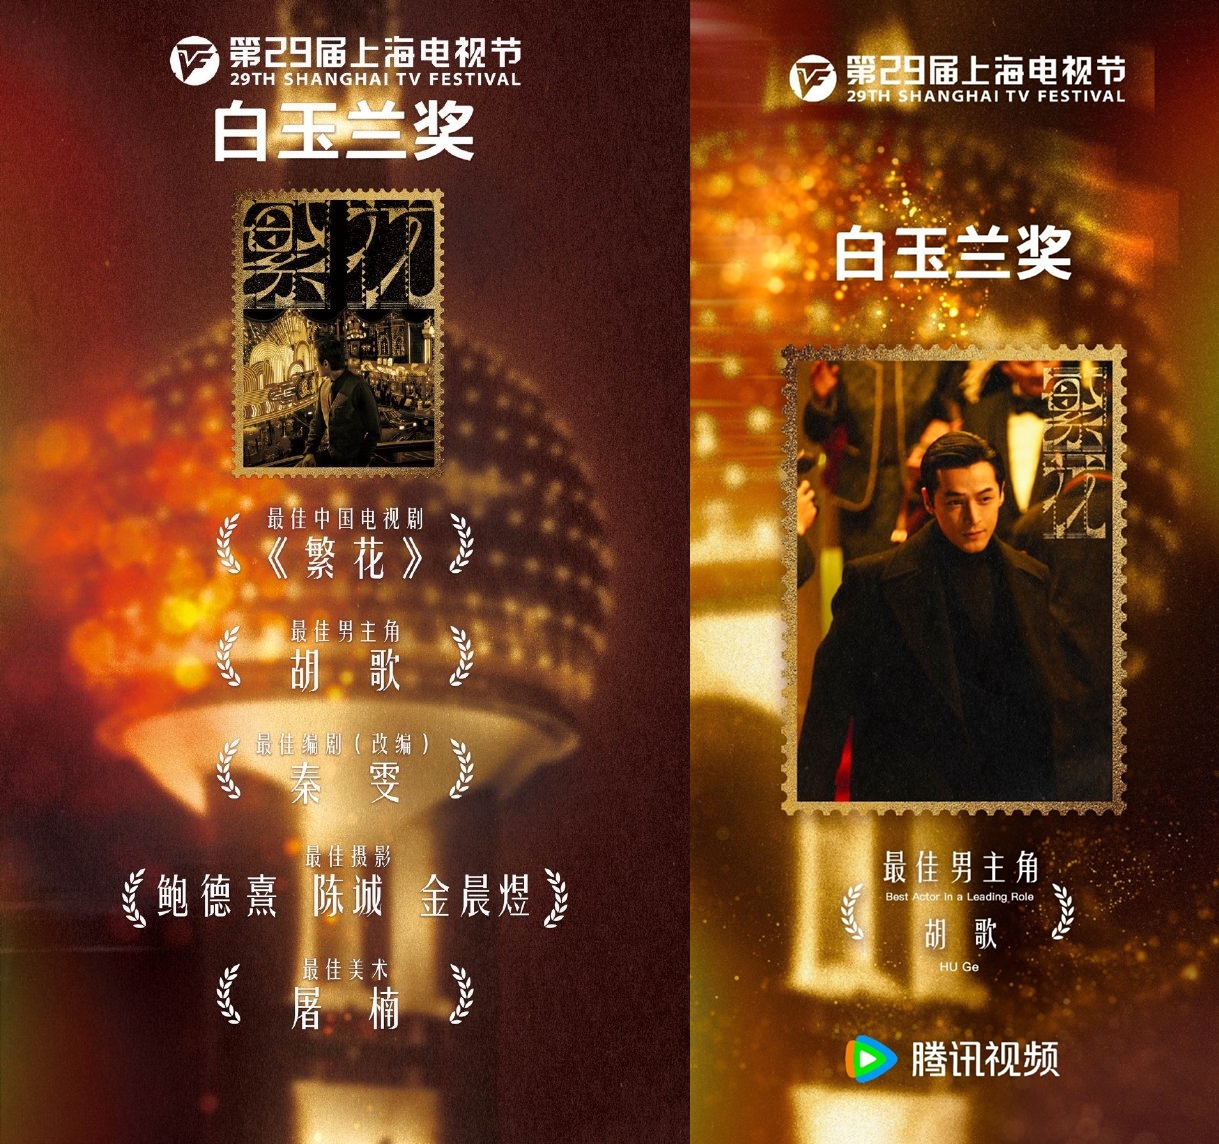 第29屆上海電視節白玉蘭獎頒獎典禮，《繁花》共計獲得5獎項是最大贏家。